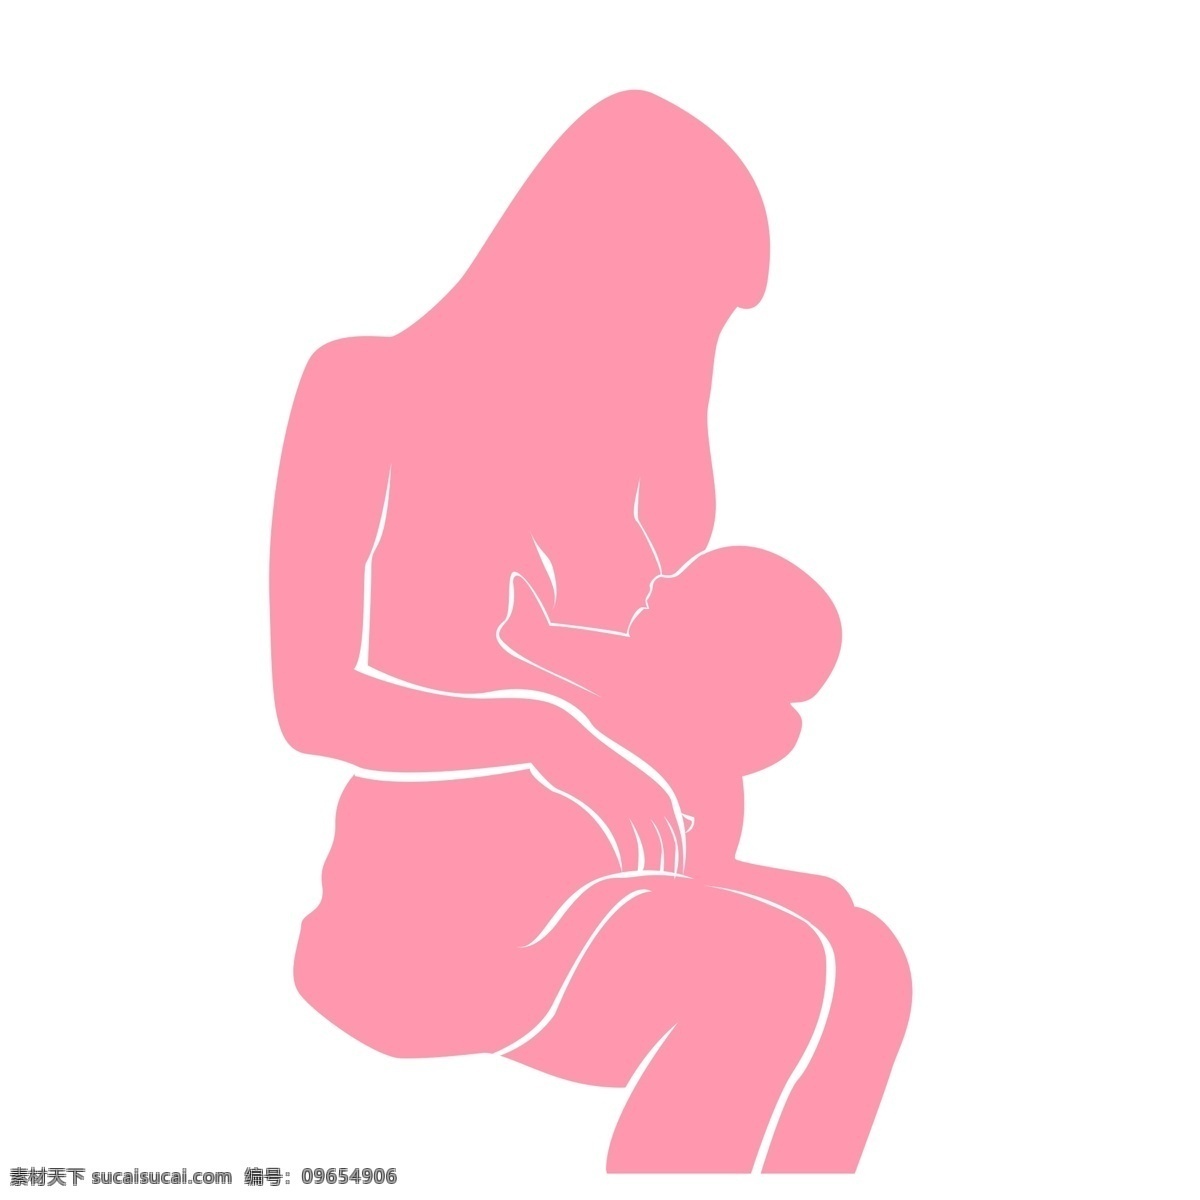 哺乳图片 喂奶 妈妈 婴儿 简画 分层 人物